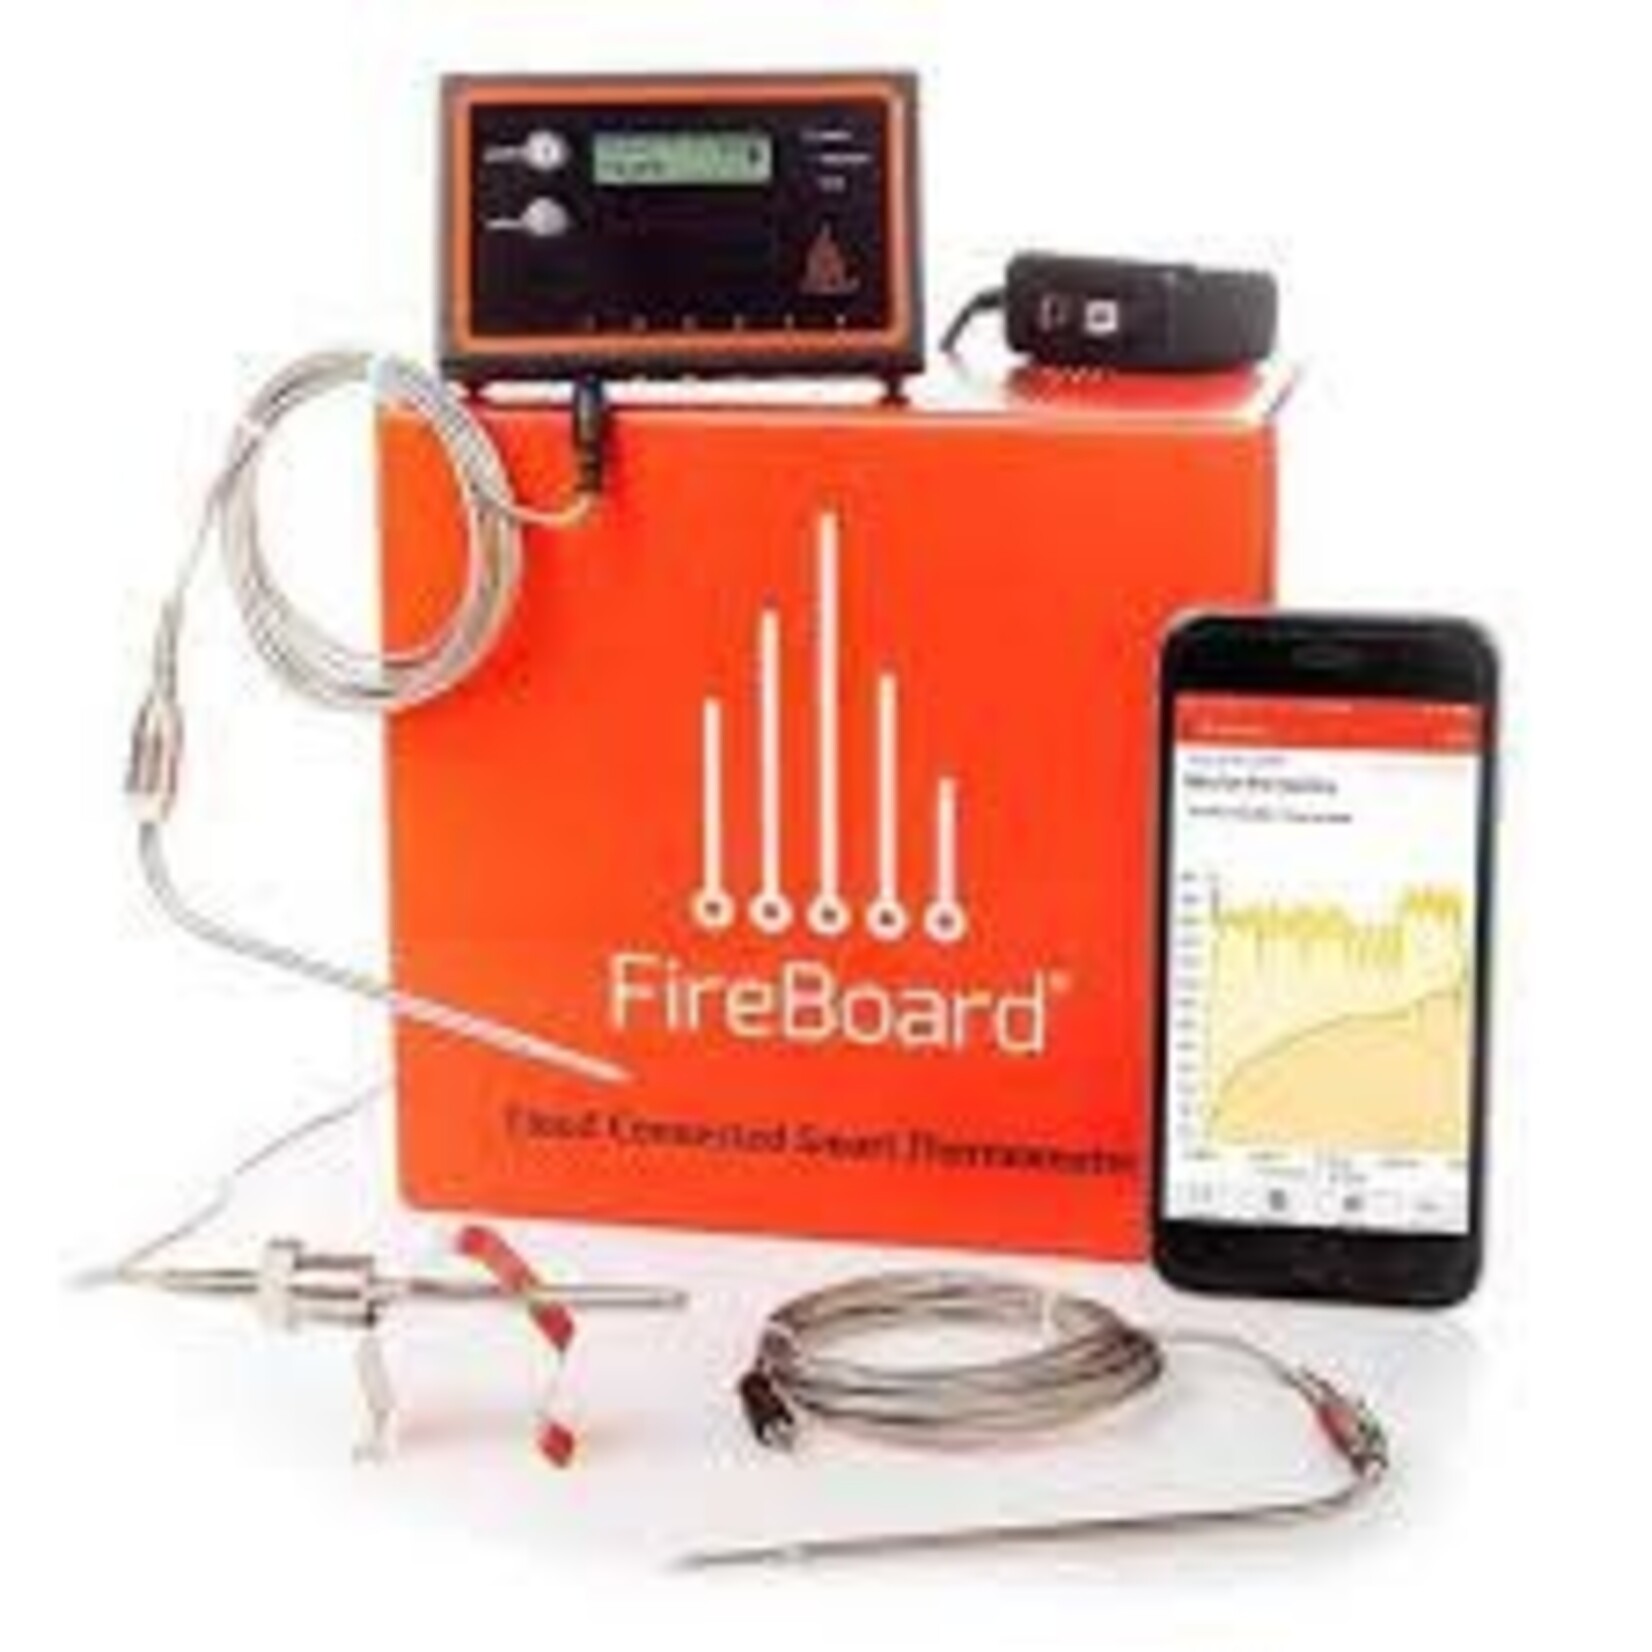 FireBoard FireBoard WiFi Thermometer